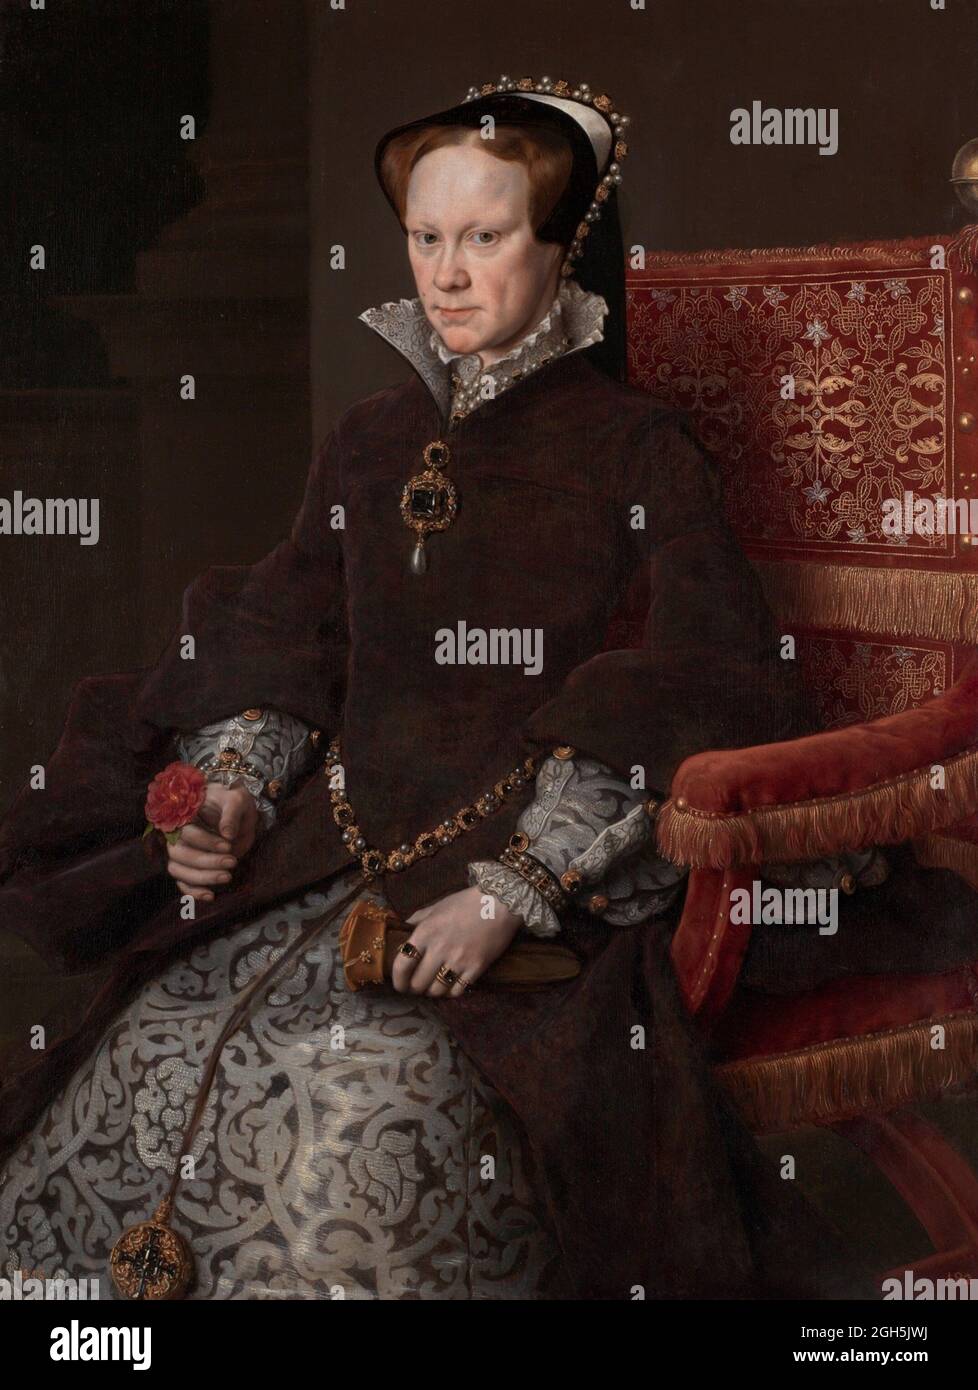 Ein Porträt der Königin Mary I. (Bloody Mary), die von 1553 bis 1558 Königin von England war Stockfoto